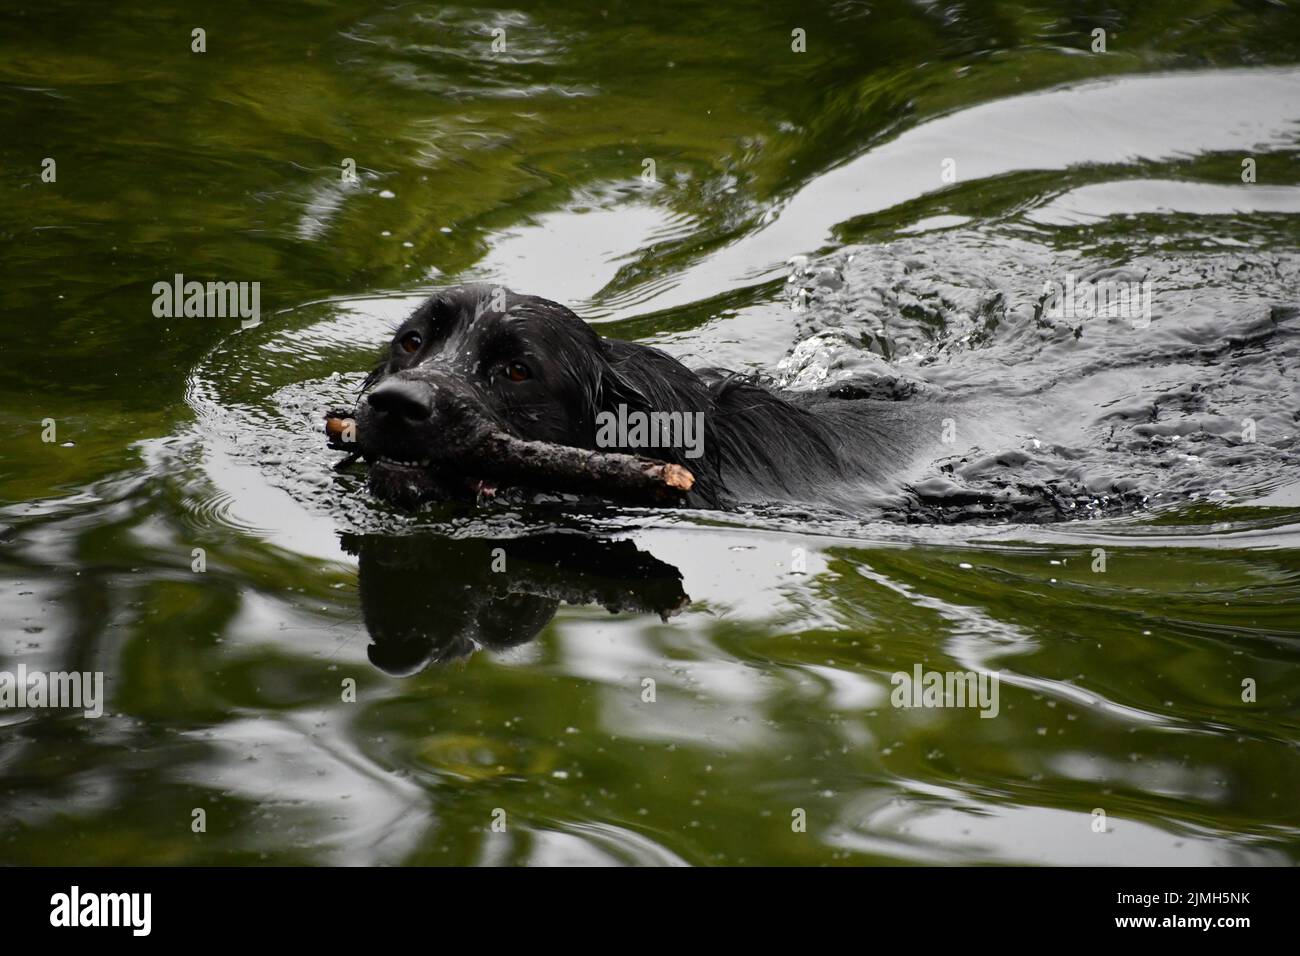 Black labrador Retriever nuotare in acqua, fiume Nore, Kilkenny, Irlanda Foto Stock